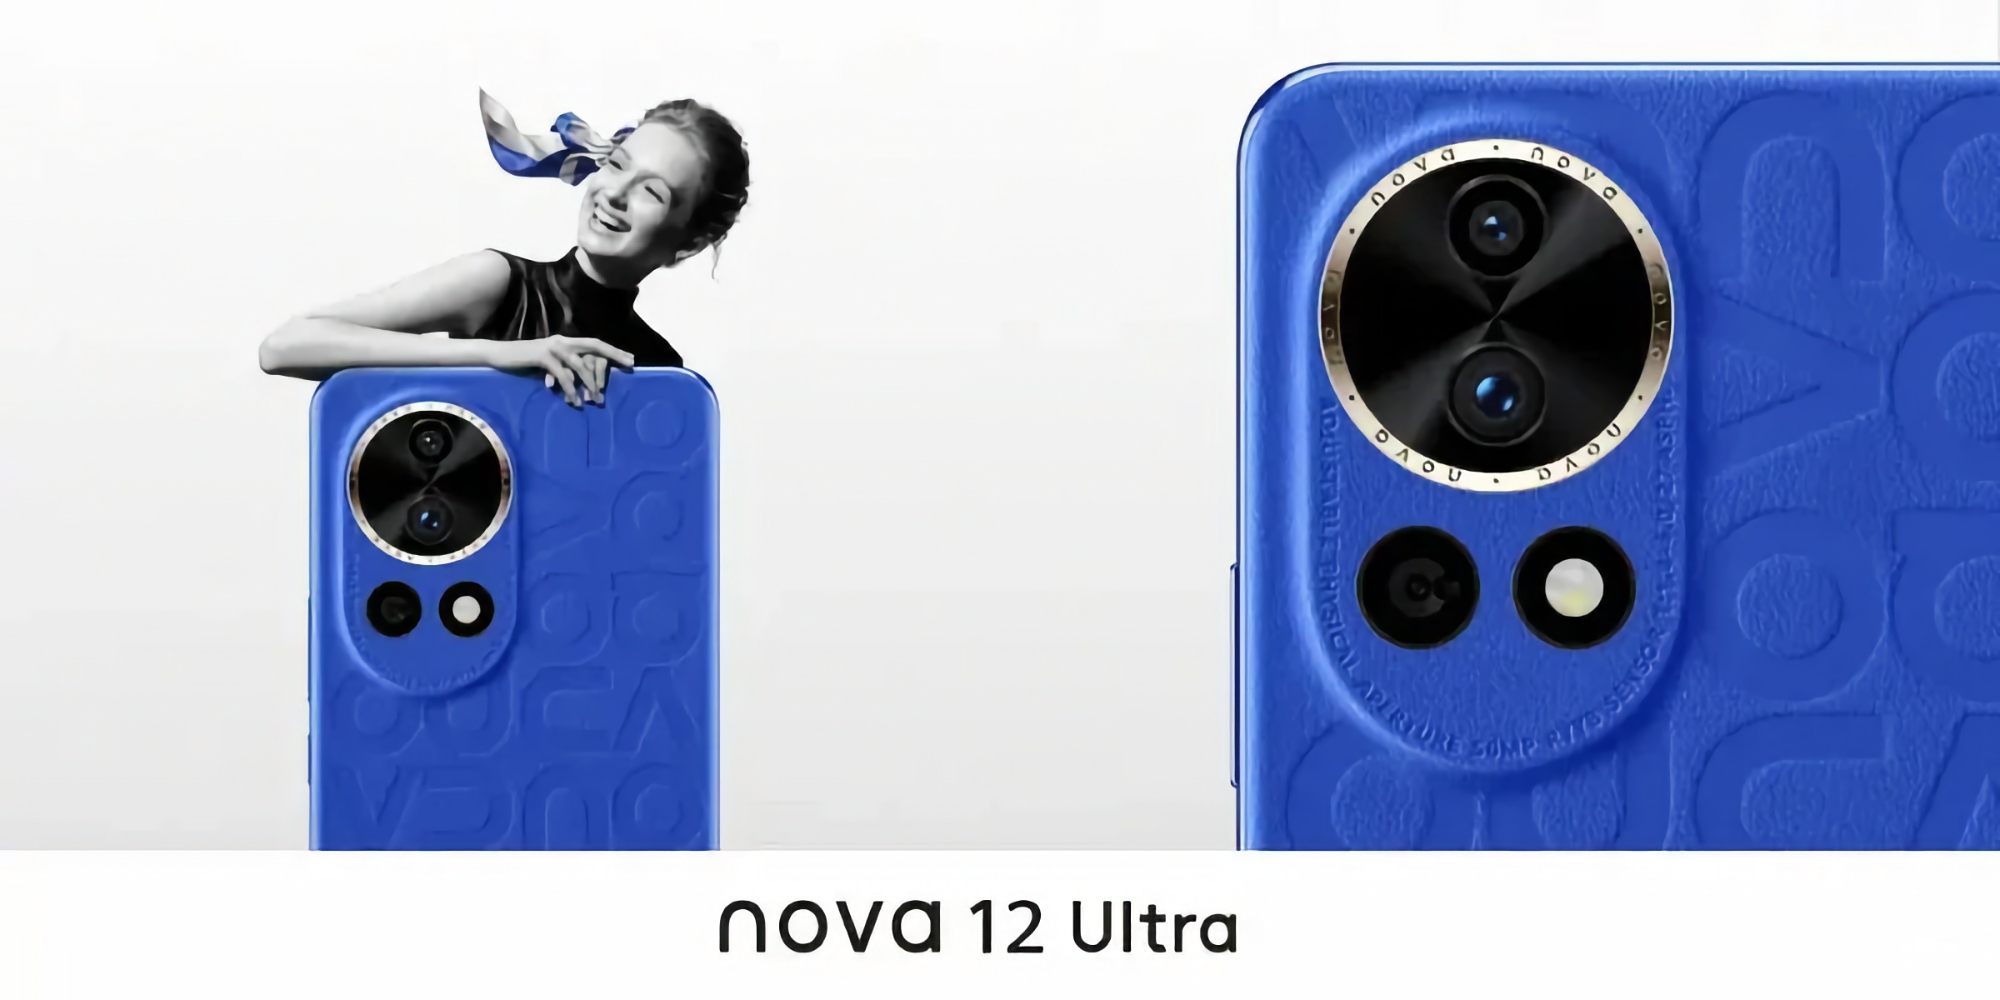 En insider viste udseendet af Huawei Nova 12 Ultra og delte nogle egenskaber ved nyheden